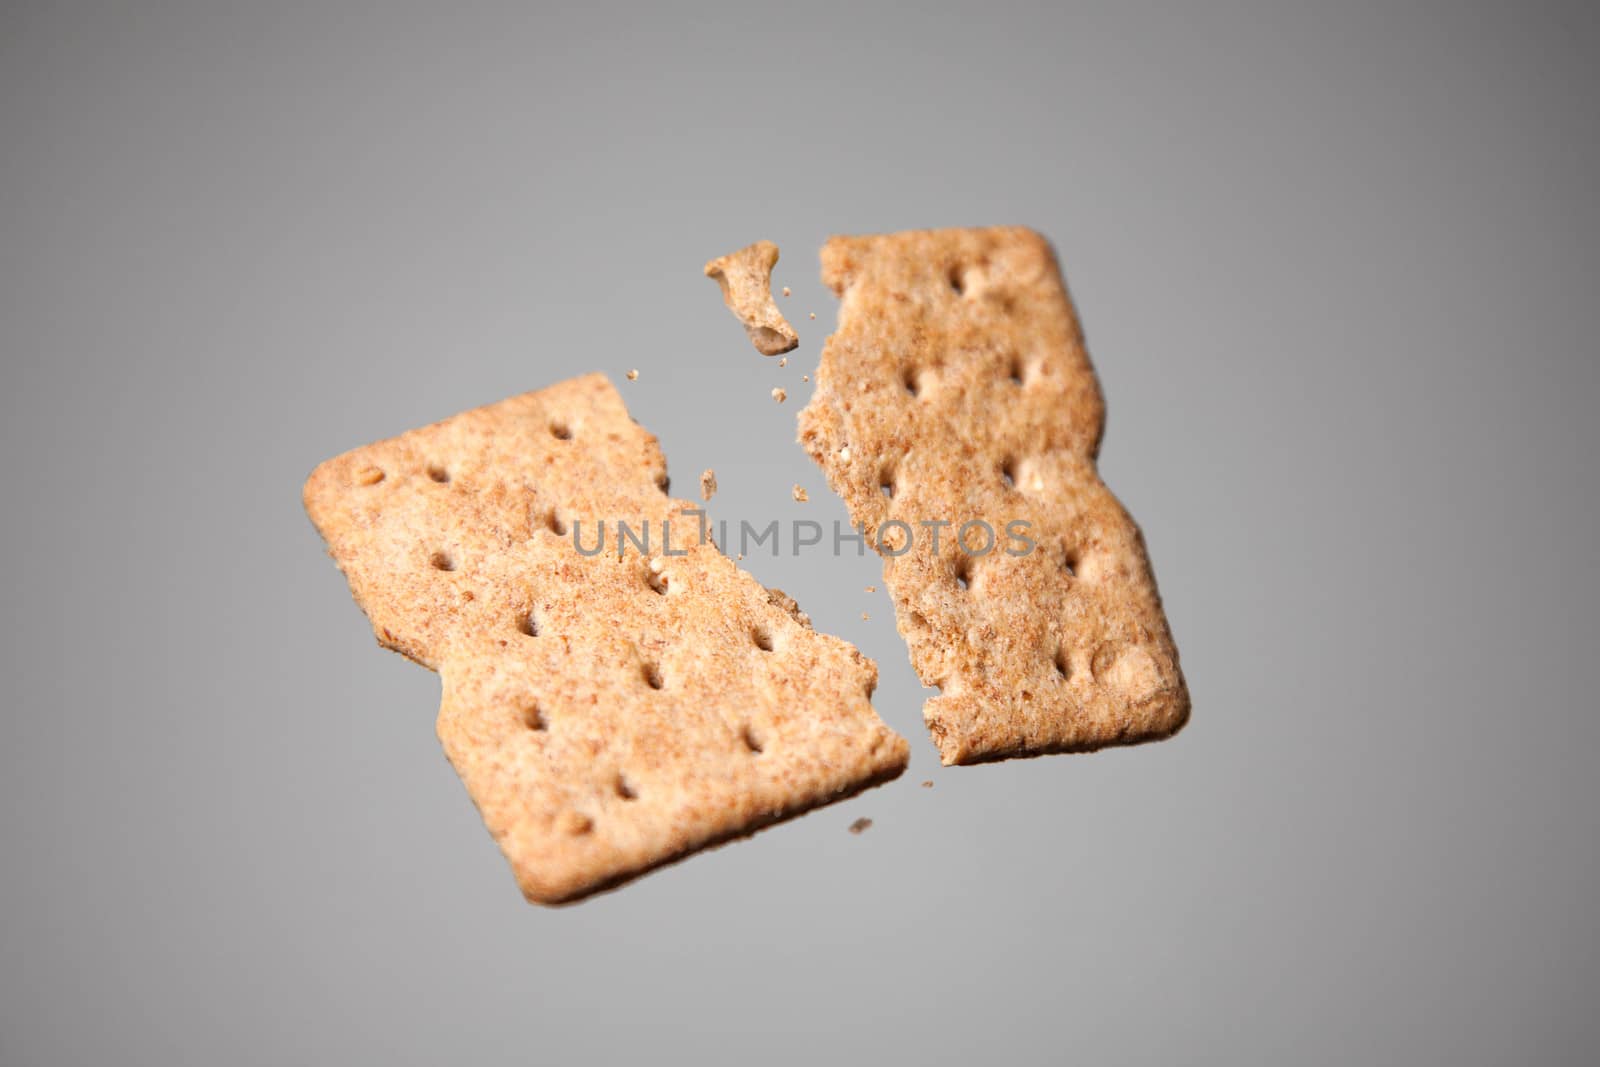 Cracker in motion, studio shot on gray background 